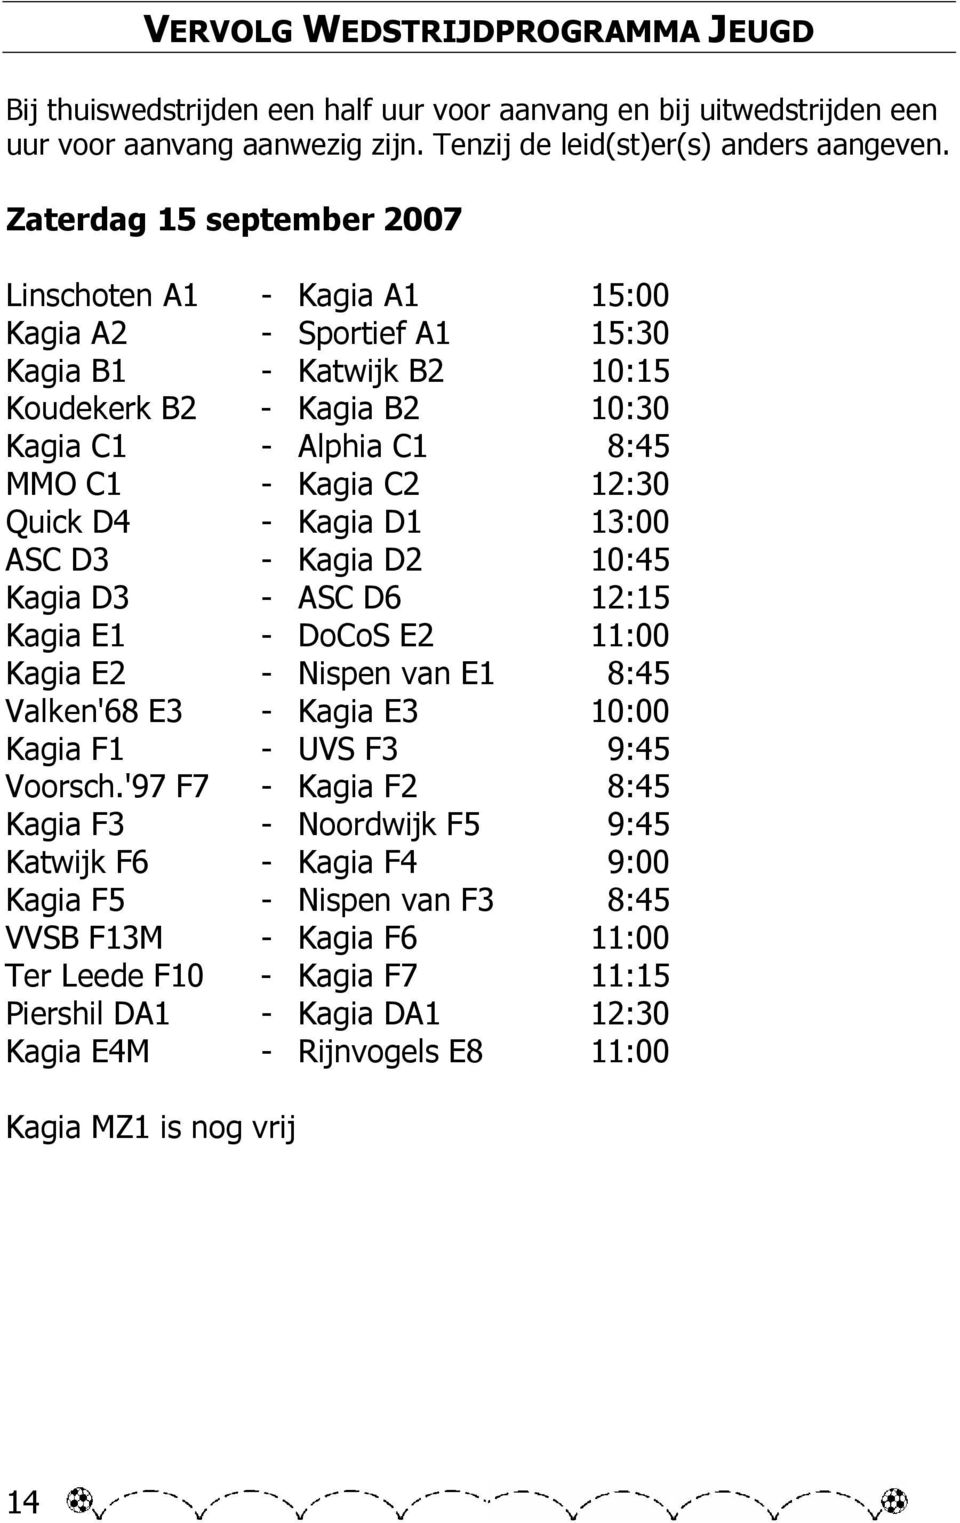 Quick D4 - Kagia D1 13:00 ASC D3 - Kagia D2 10:45 Kagia D3 - ASC D6 12:15 Kagia E1 - DoCoS E2 11:00 Kagia E2 - Nispen van E1 8:45 Valken'68 E3 - Kagia E3 10:00 Kagia F1 - UVS F3 9:45 Voorsch.